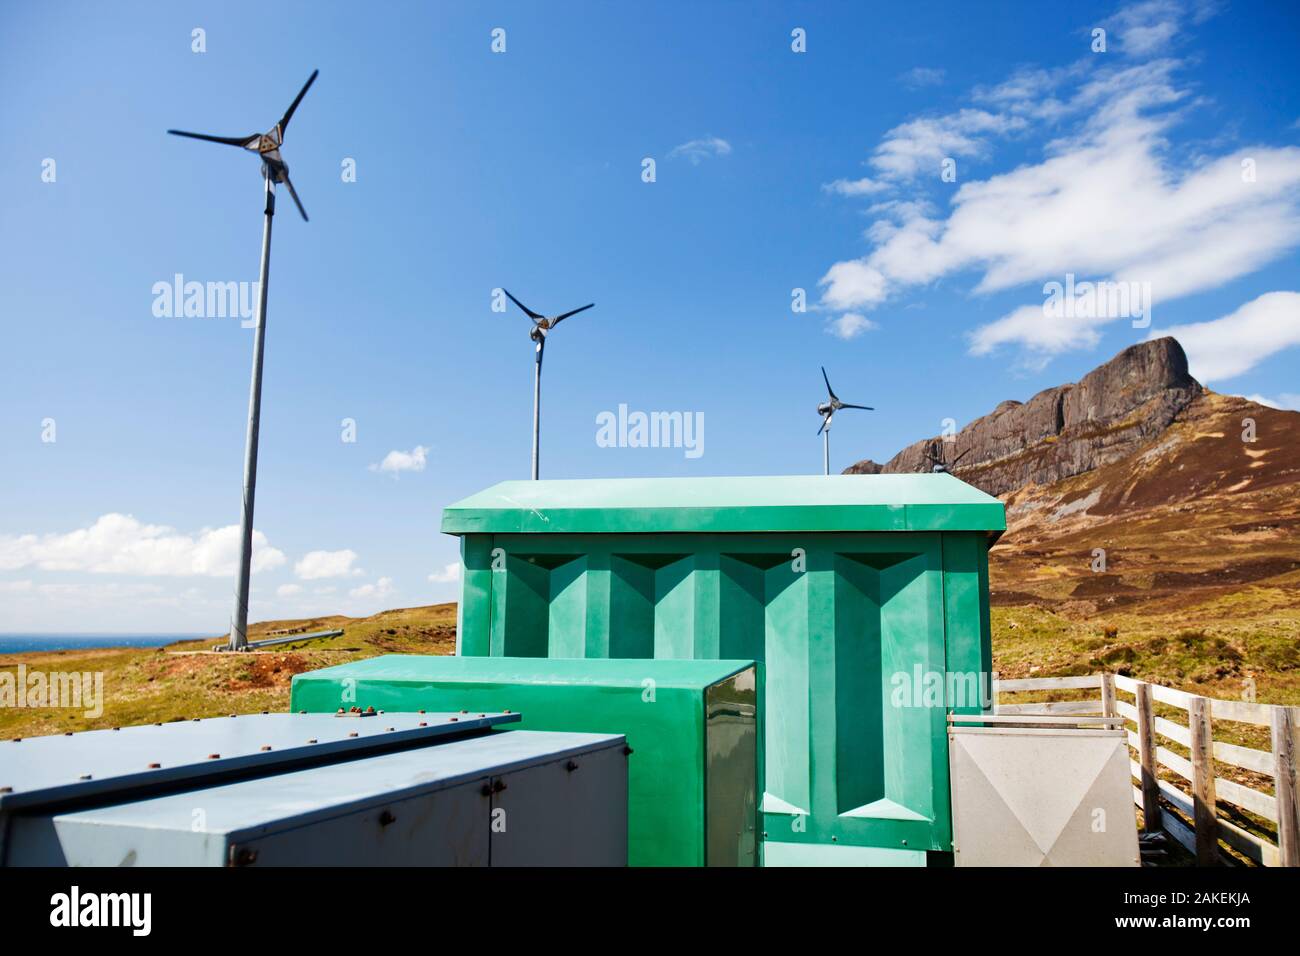 Quattro turbine a vento al di sotto di un Sgurr, Isola di Eigg. Isola di Eigg produce tutta l'energia l'isola nees da fonti di energia rinnovabili. Eigg, Scotland, Regno Unito, maggio. Foto Stock